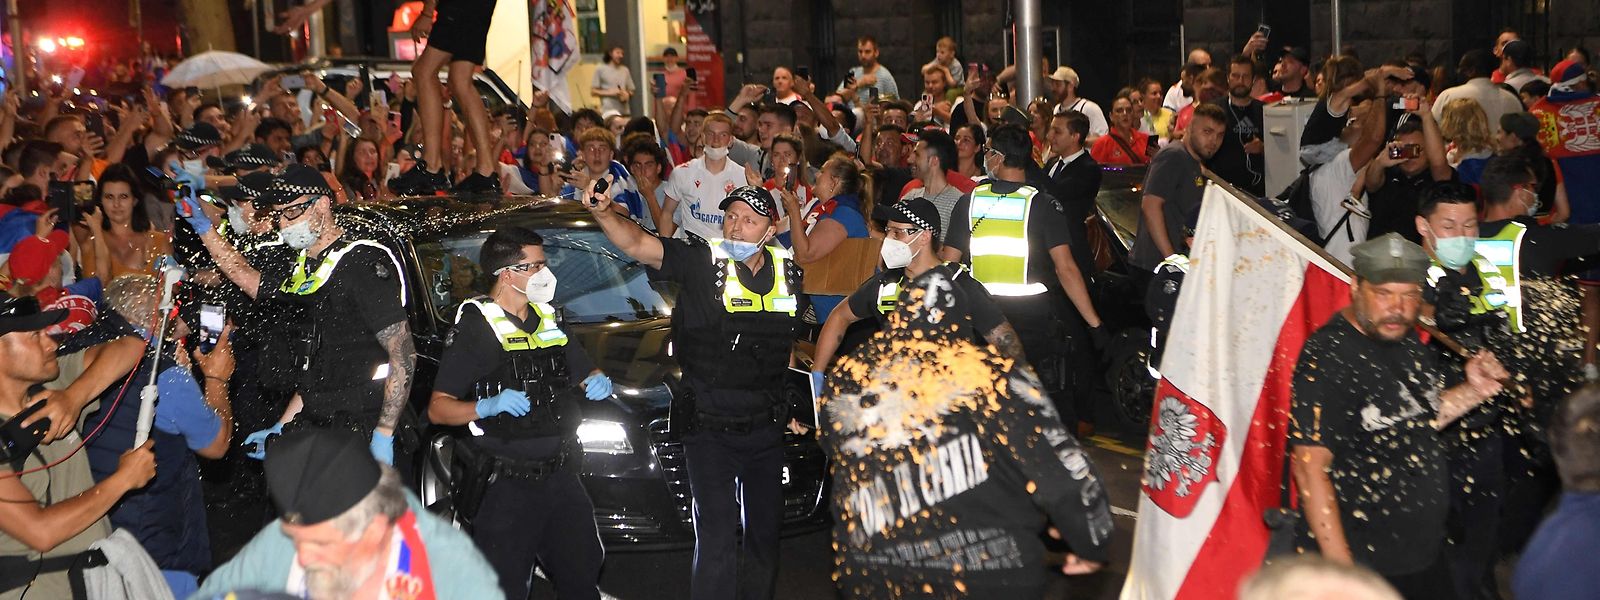 Polizisten setzen Pfefferspray gegen randalierende Novak-Djokovic-Fans ein.